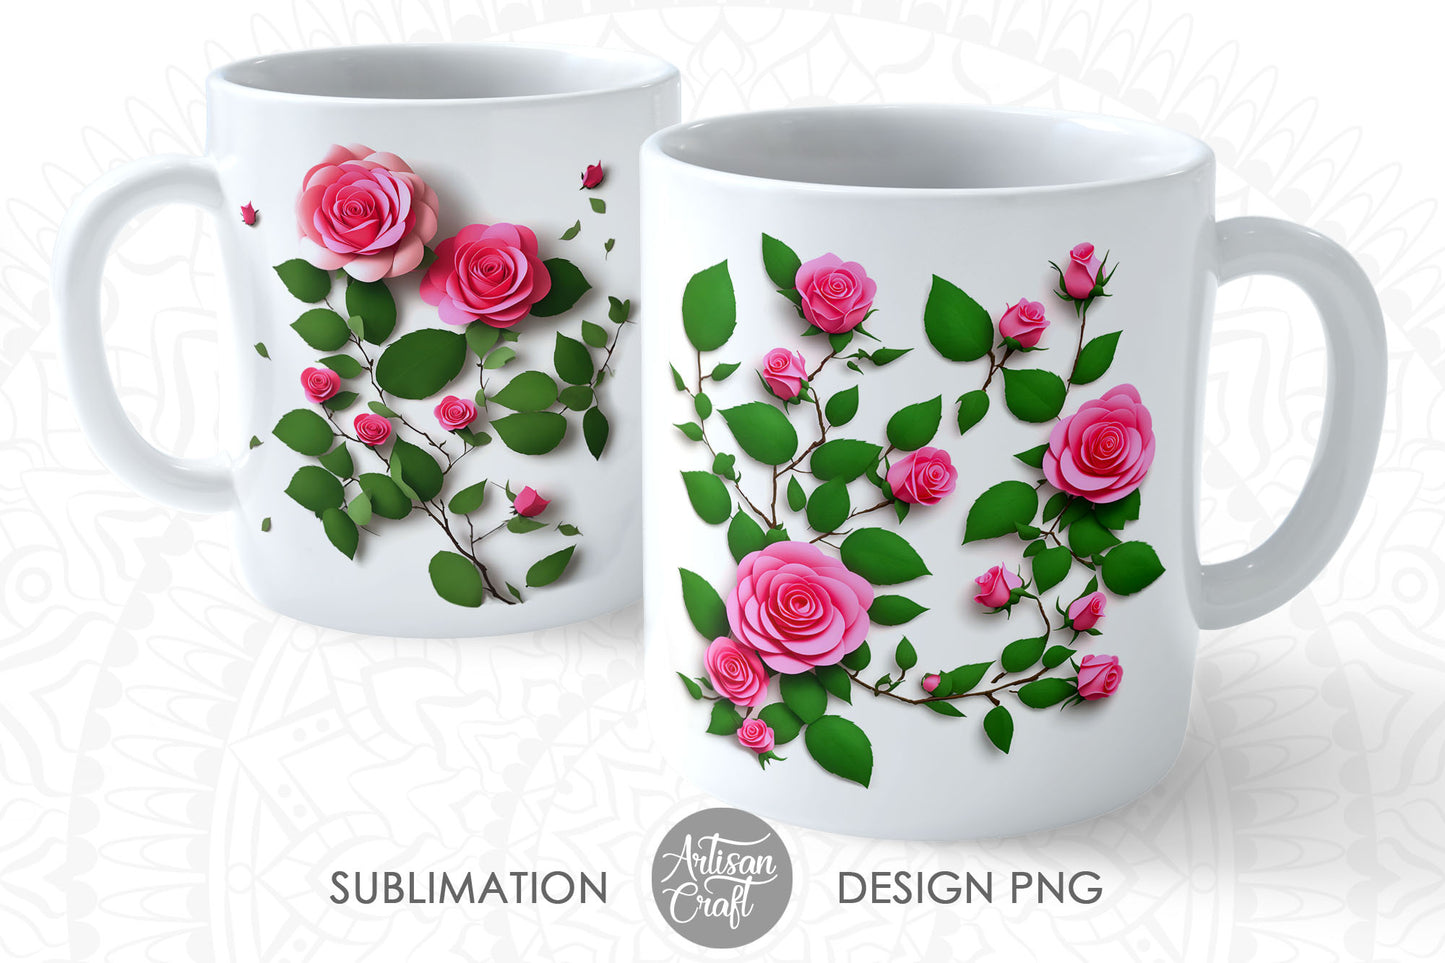 3D Roses 11oz mug sublimation designs